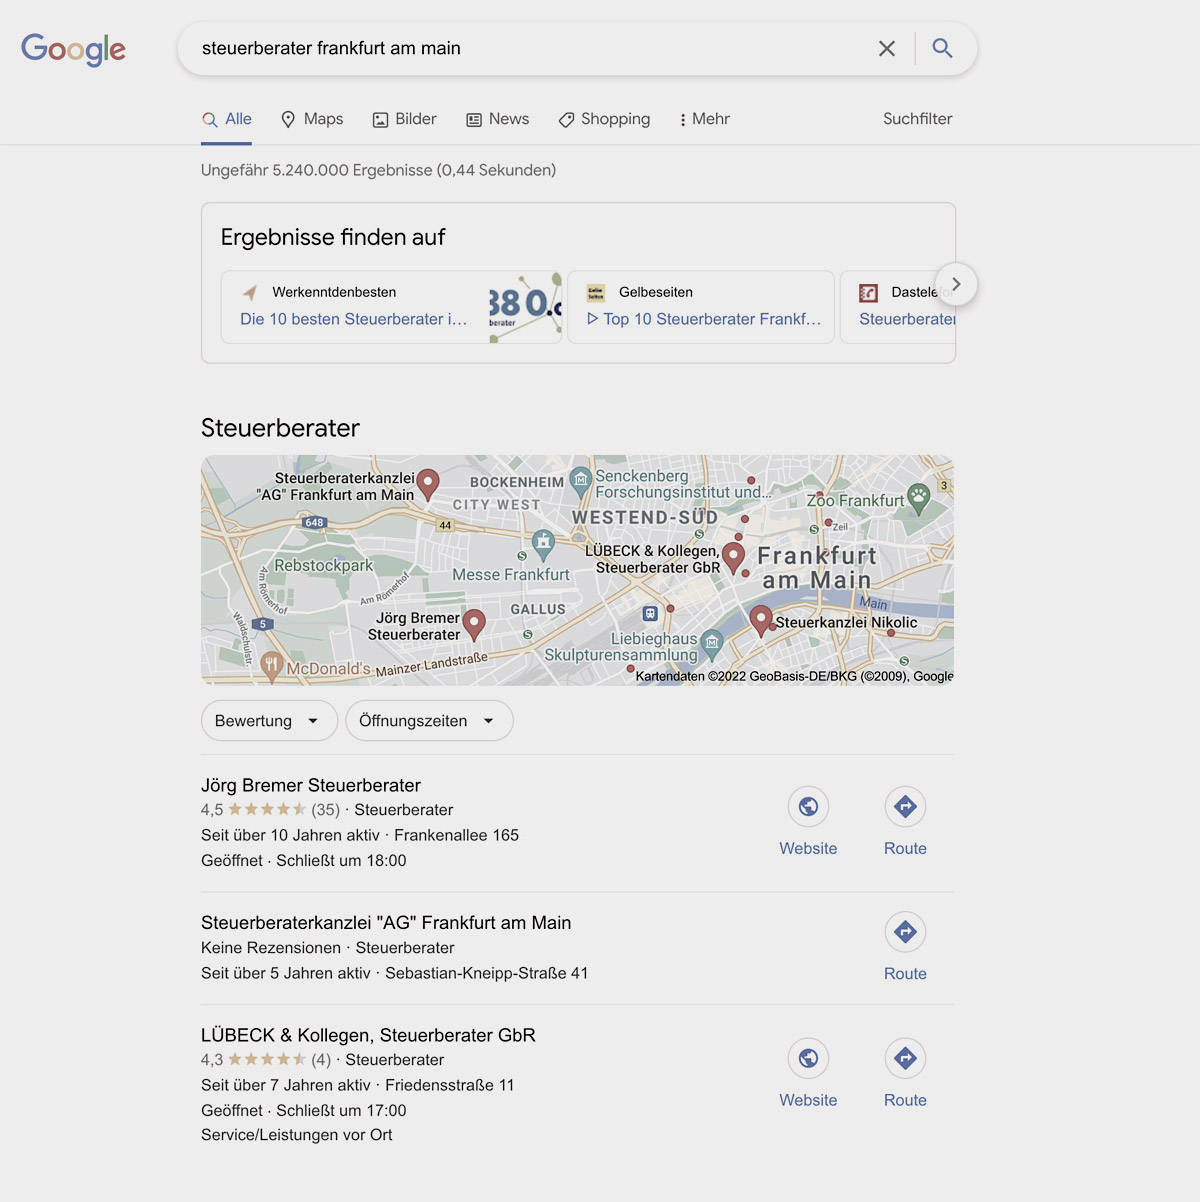 Beispiel Steuerberatung Frankfurt - Lokale Suchtreffer in Google Kartenansicht ohne Umland